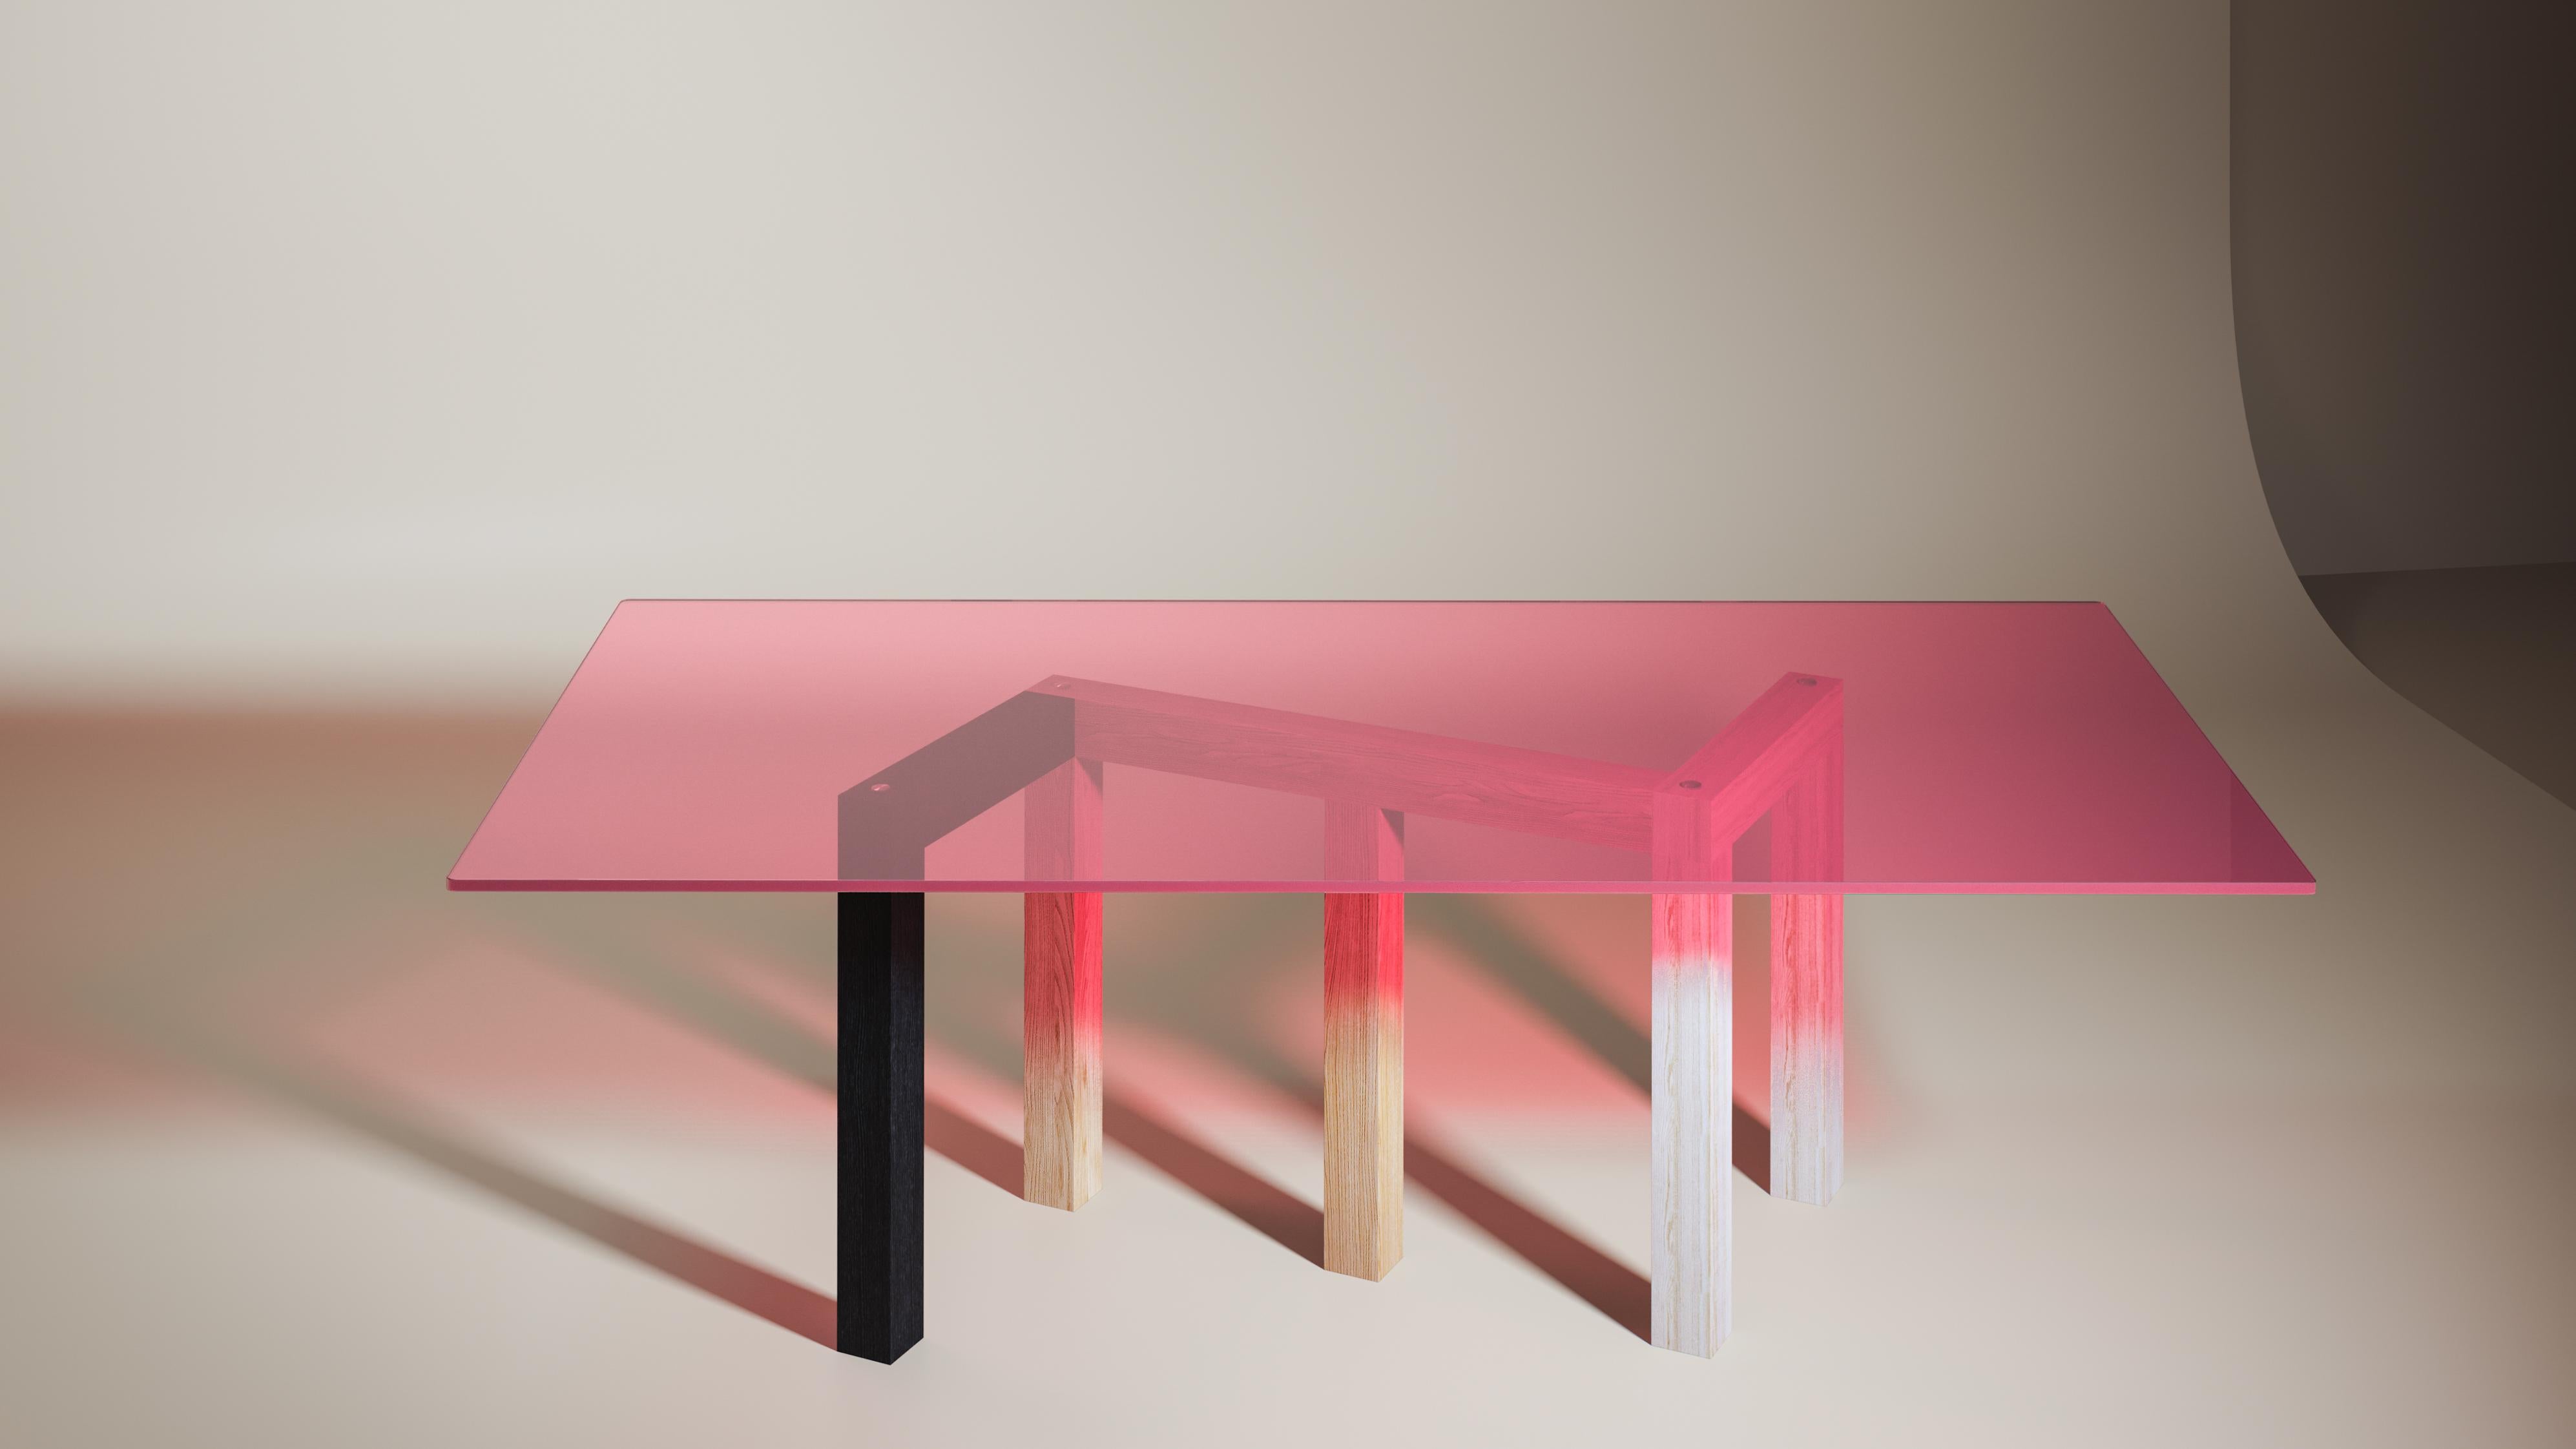 Table de salle à manger Penrose par Hayo Gebauer
Dimensions : D 115 x L 240 x H 71 cm
MATERIAL : Noir, frêne massif huilé bleui, plateau en verre rose

Penrose est une grande table de dîner en bois et en verre créée par le designer Hayo Gebauer,